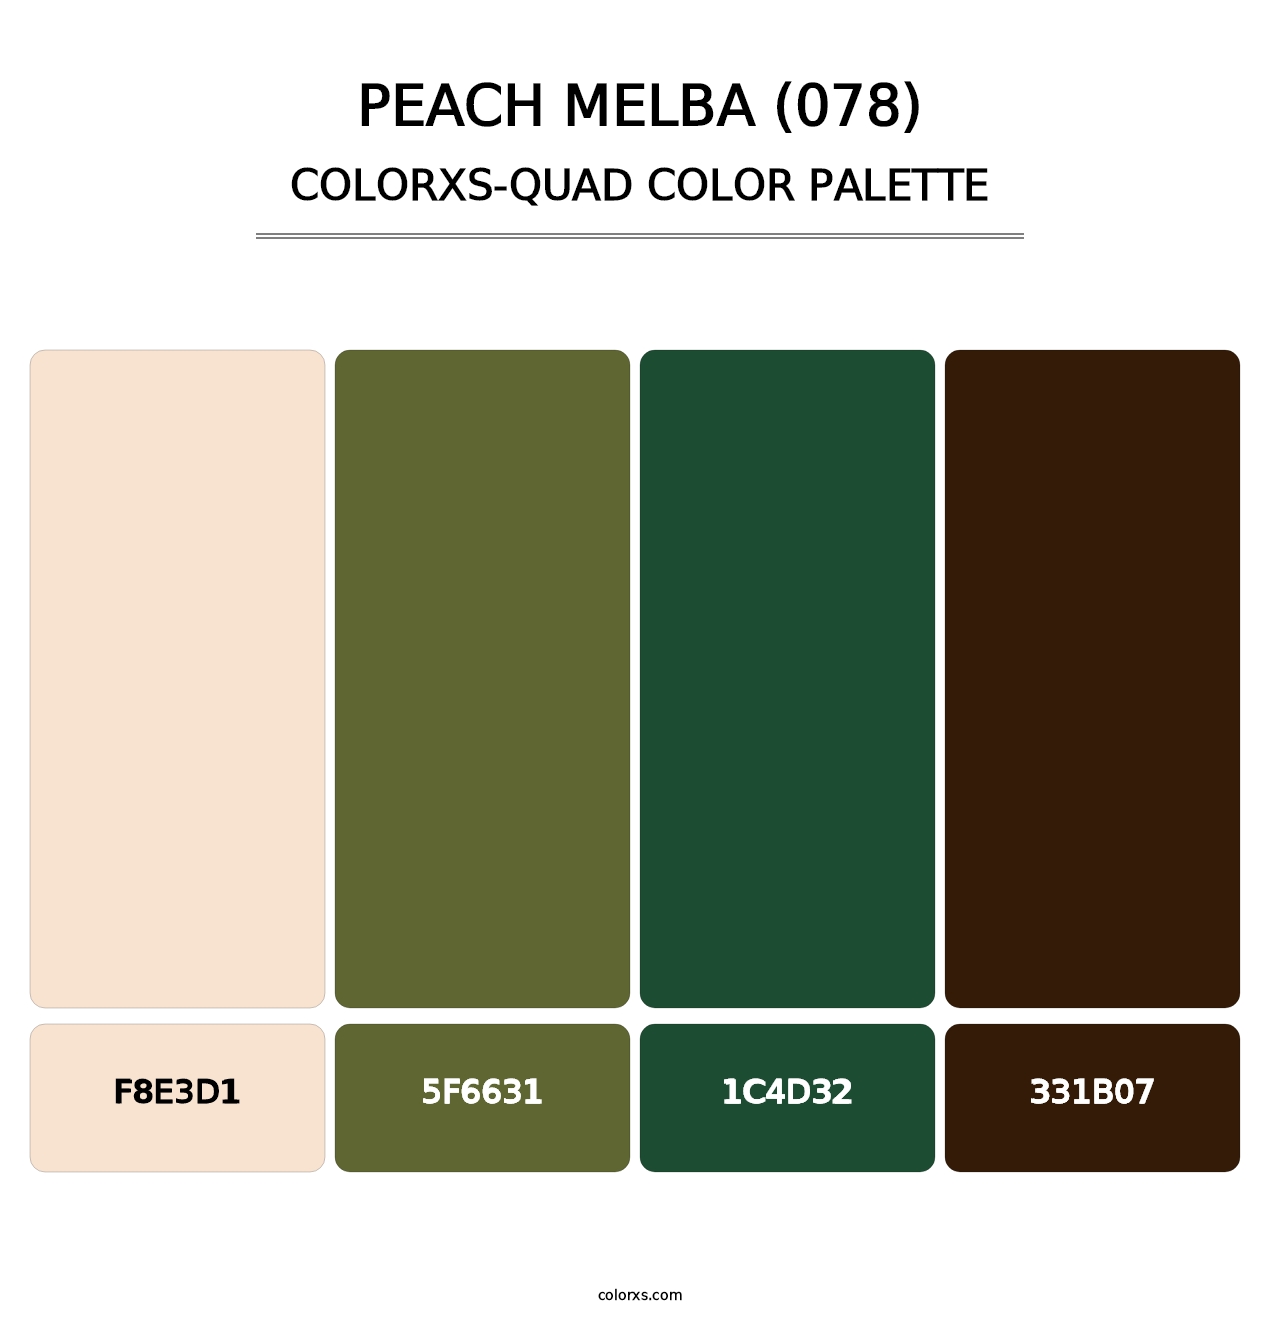 Peach Melba (078) - Colorxs Quad Palette